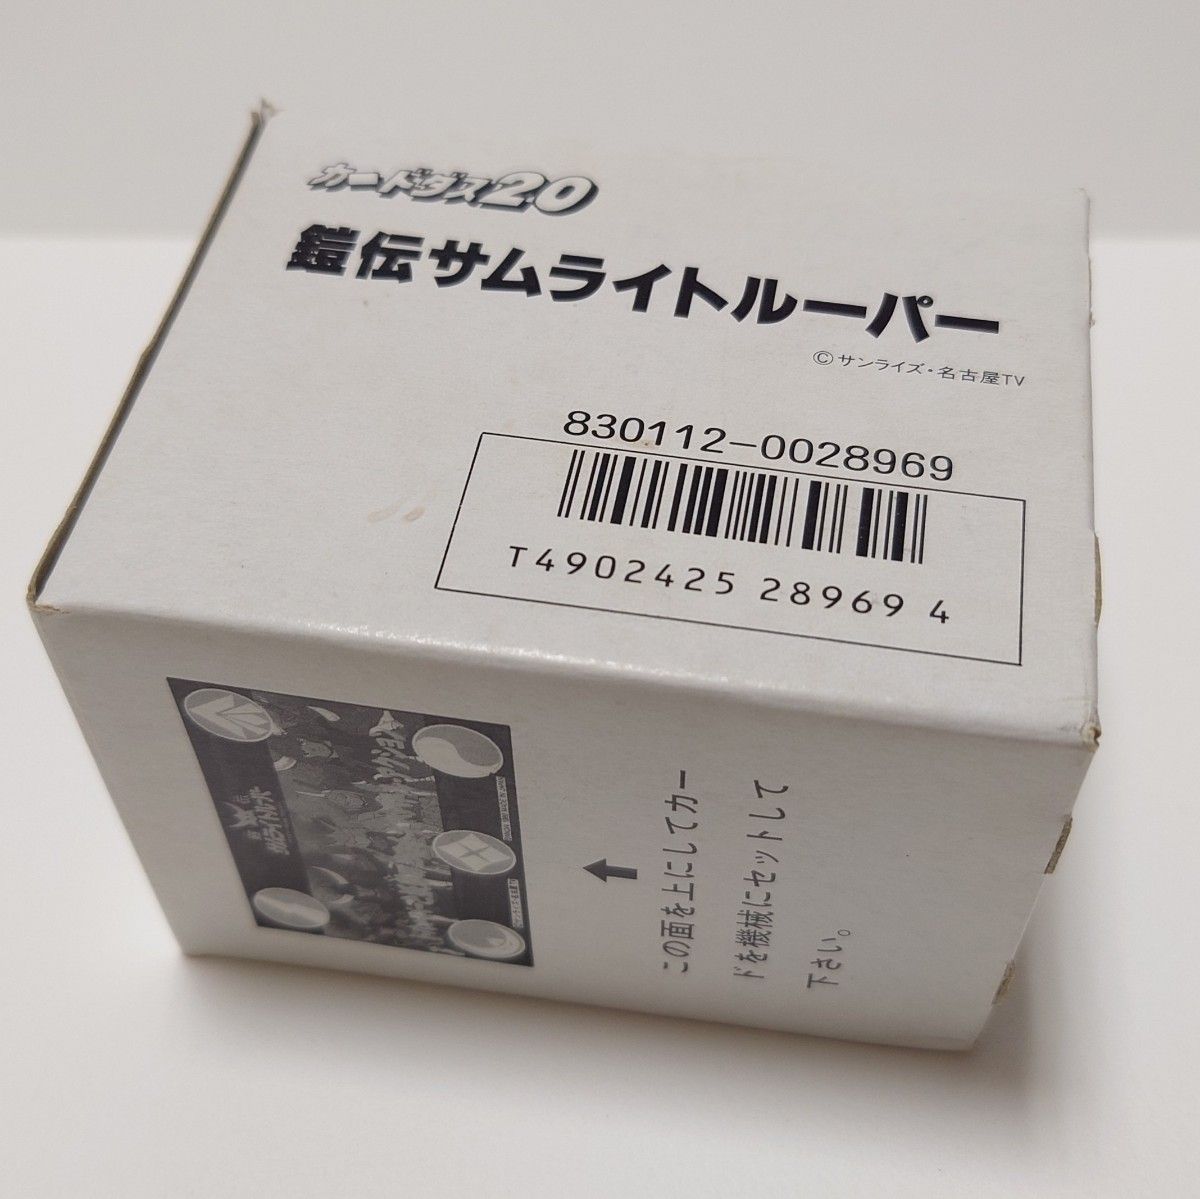 バンダイ カードダス20 鎧伝サムライトルーパー 1989 当時物 未使用ボックス